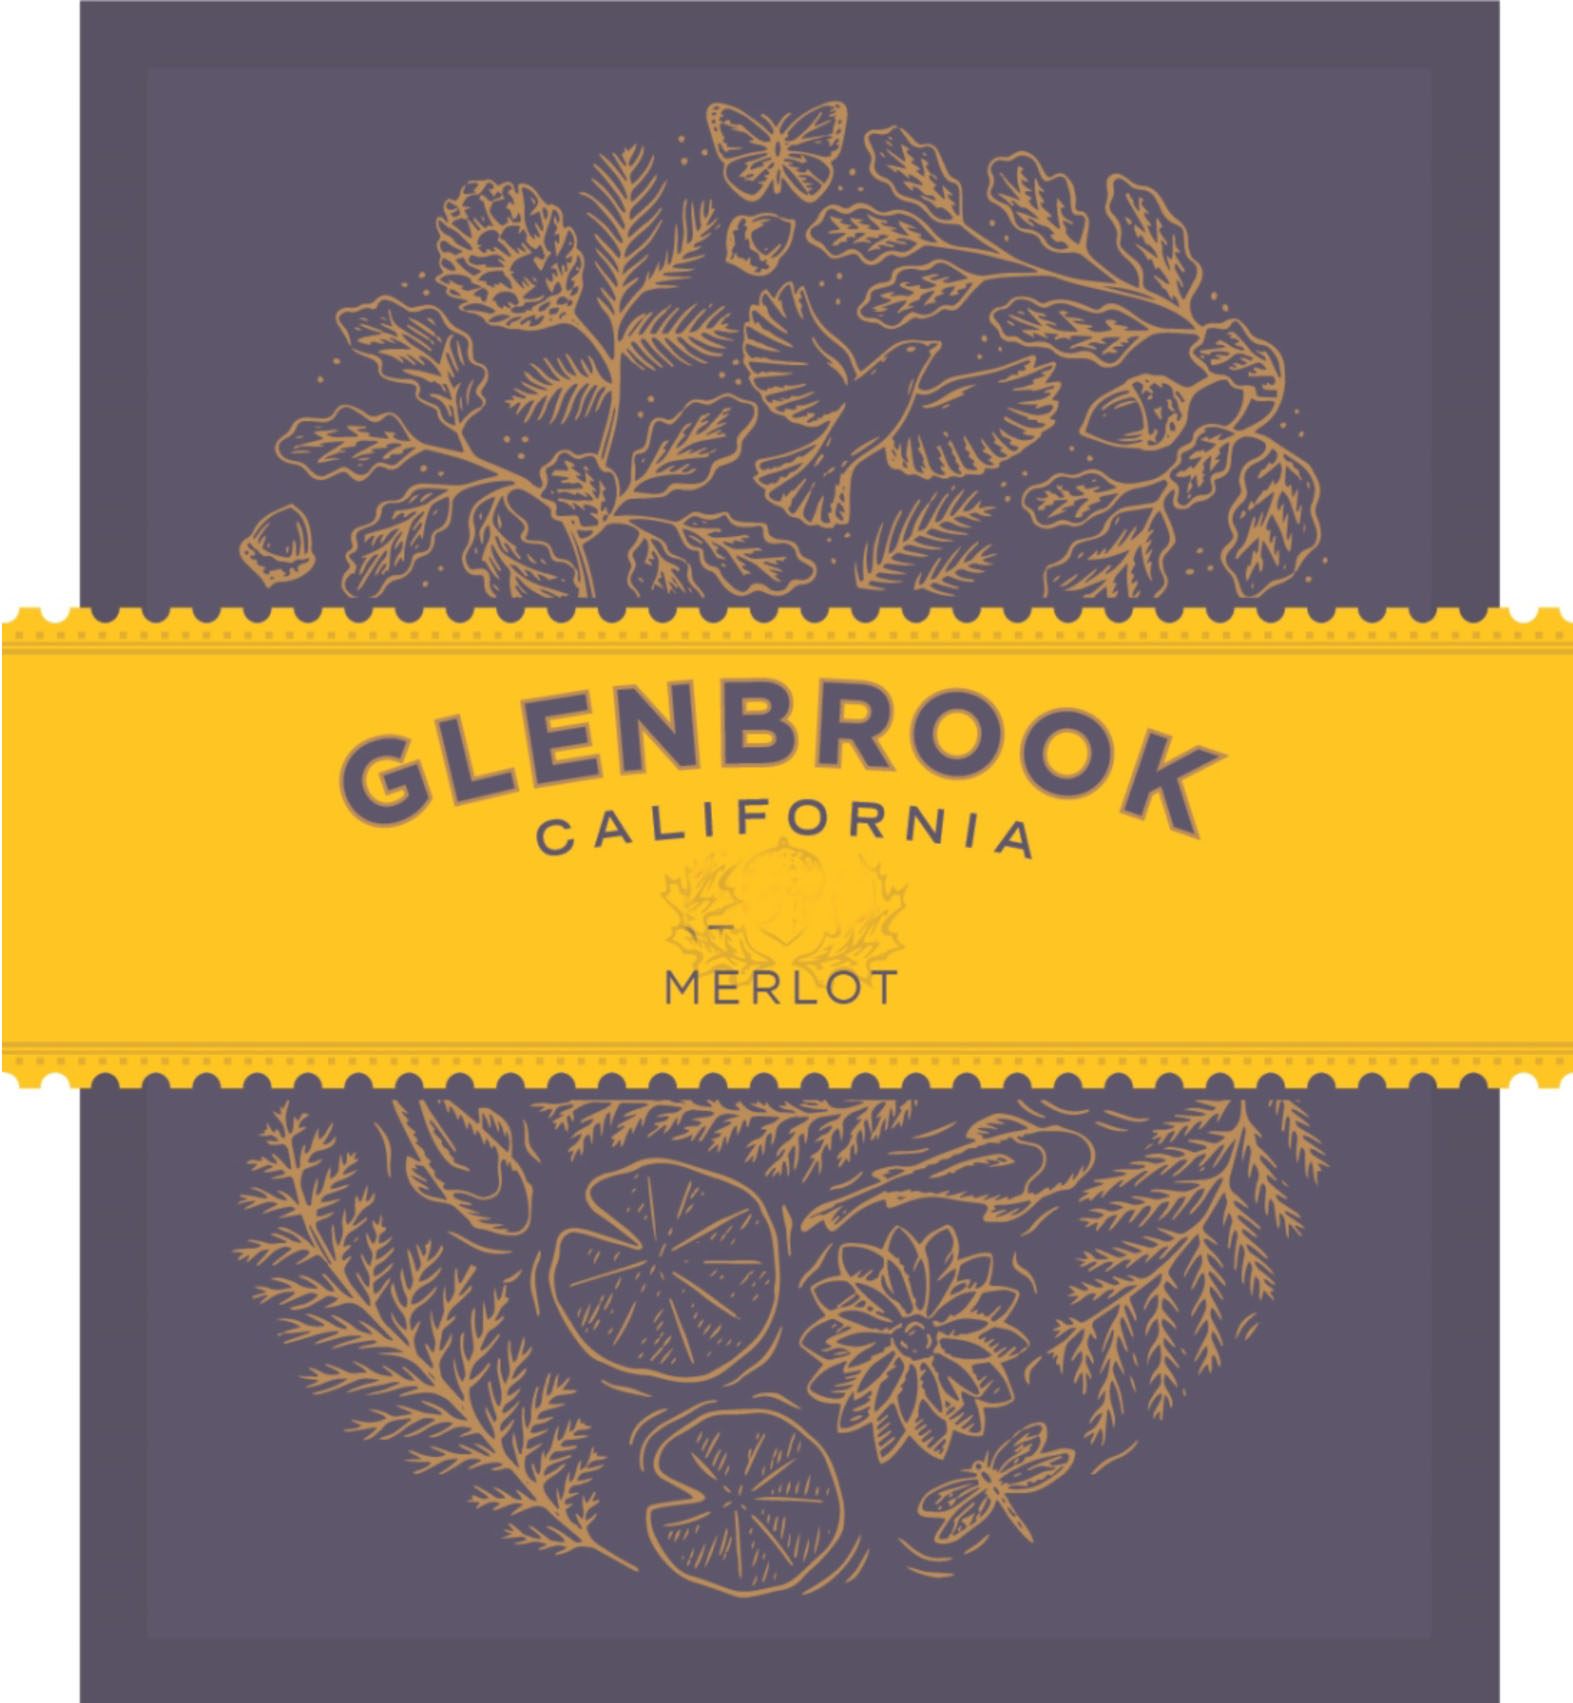 Glenbrook - Merlot label